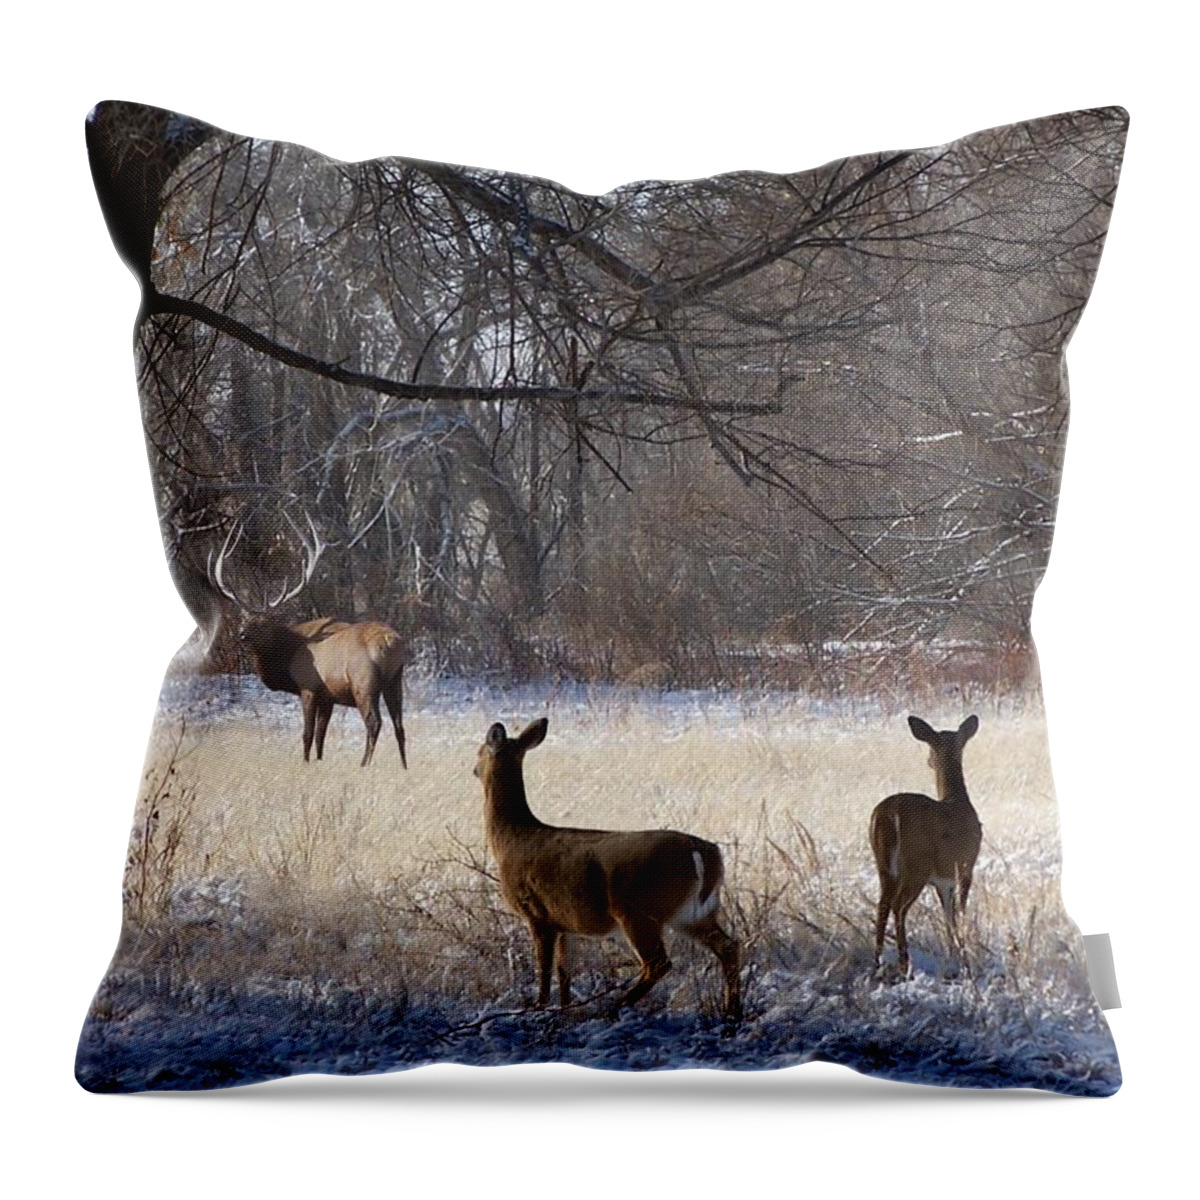 Deer Throw Pillow featuring the digital art Next of Kin by Bill Stephens